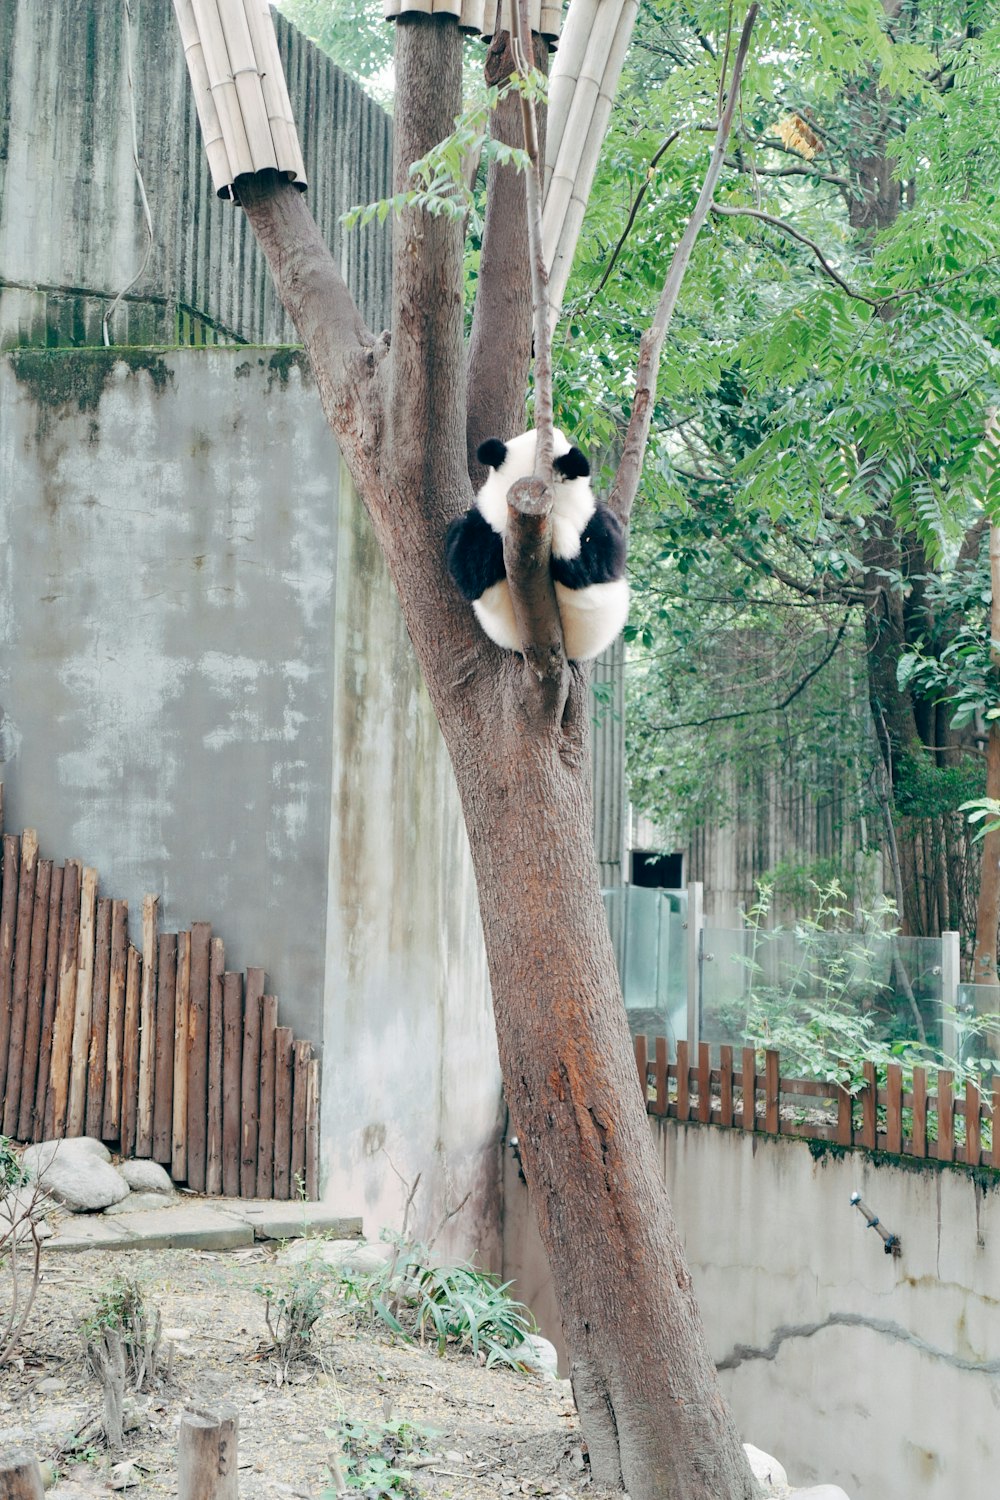 panda on brown tree trunk during daytime